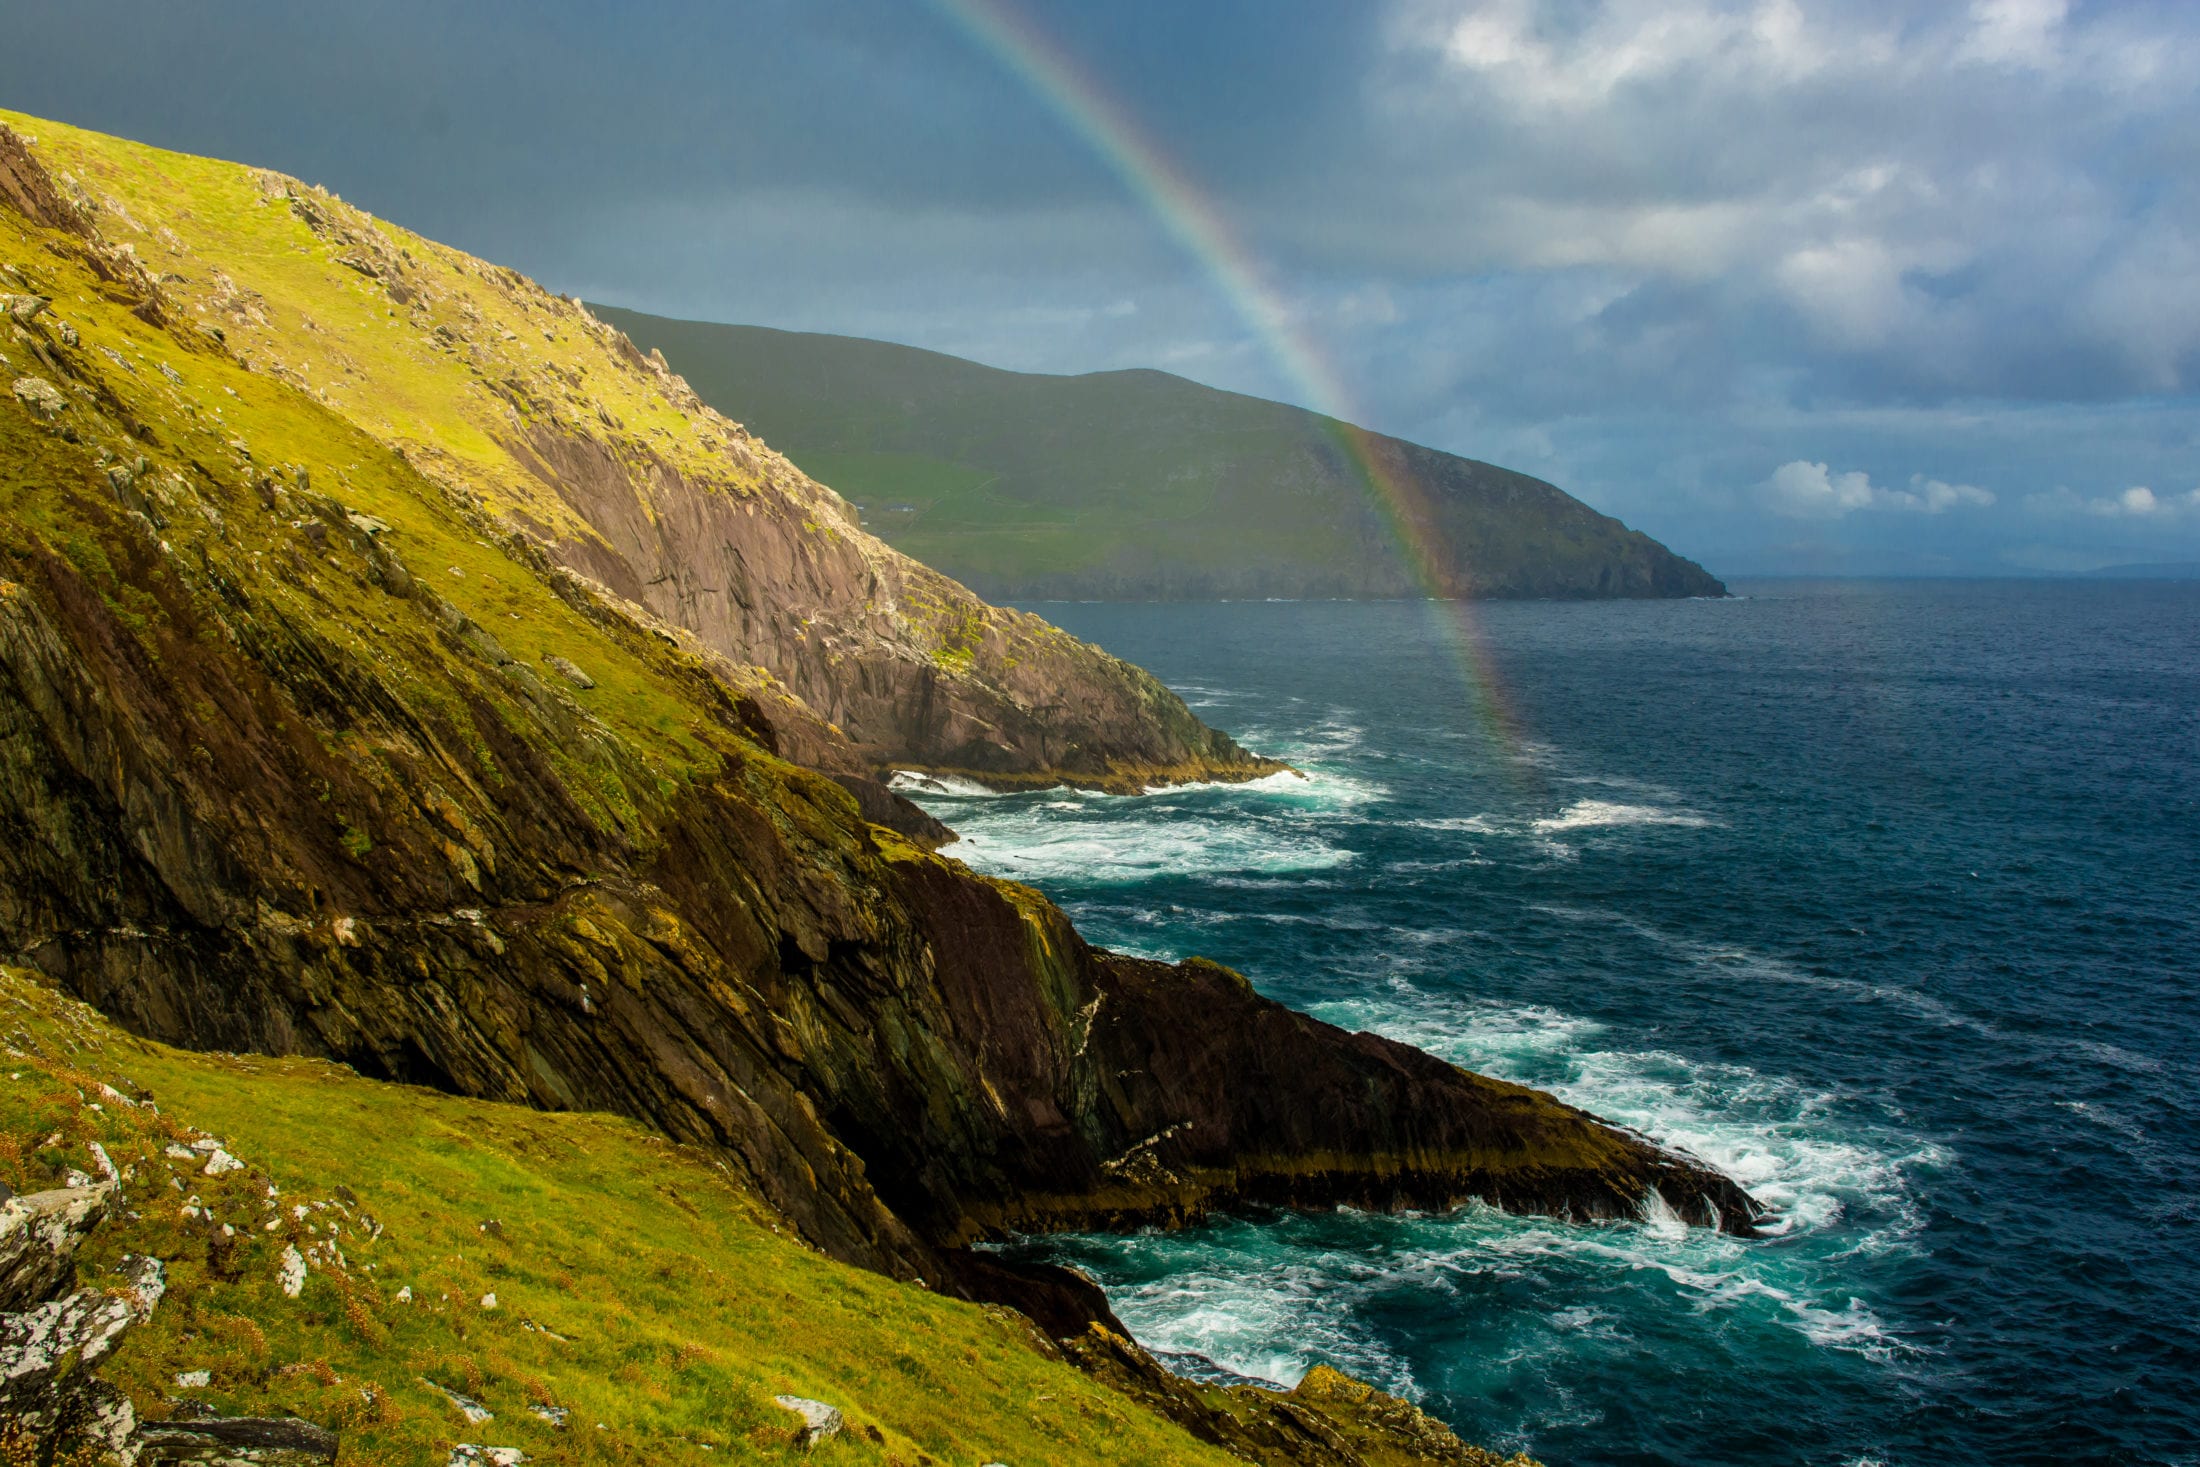 Explore Ireland: Irish Literature in the Spring 2019 semester